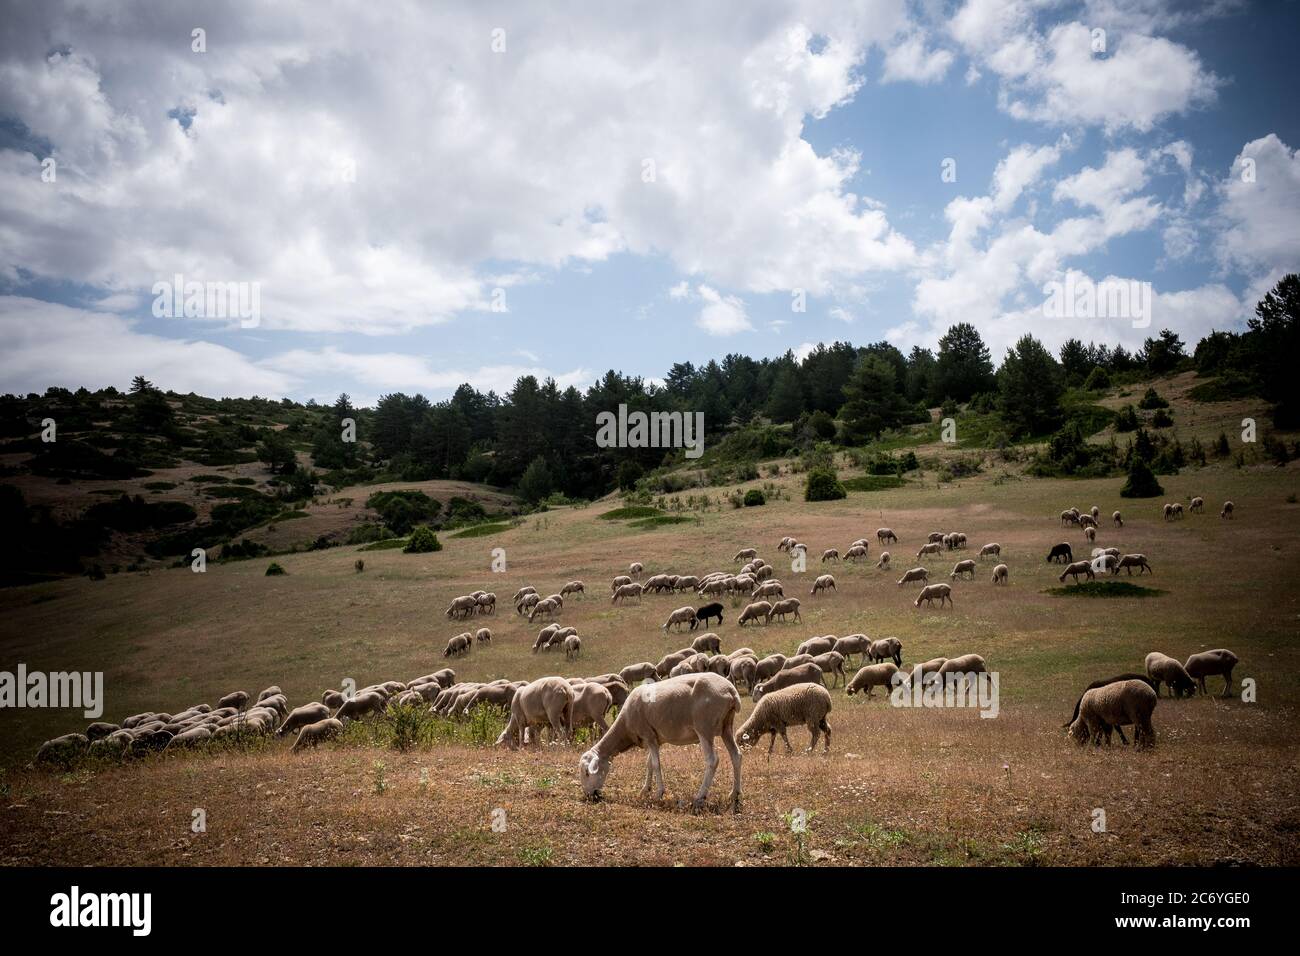 Un flok de pâte de mouton dans les champs voisins du village de Guadalaviar dans les montagnes Albarracín en Espagne. Date : 29-06-2016. Photo: Xabier Mikel Laburu Banque D'Images